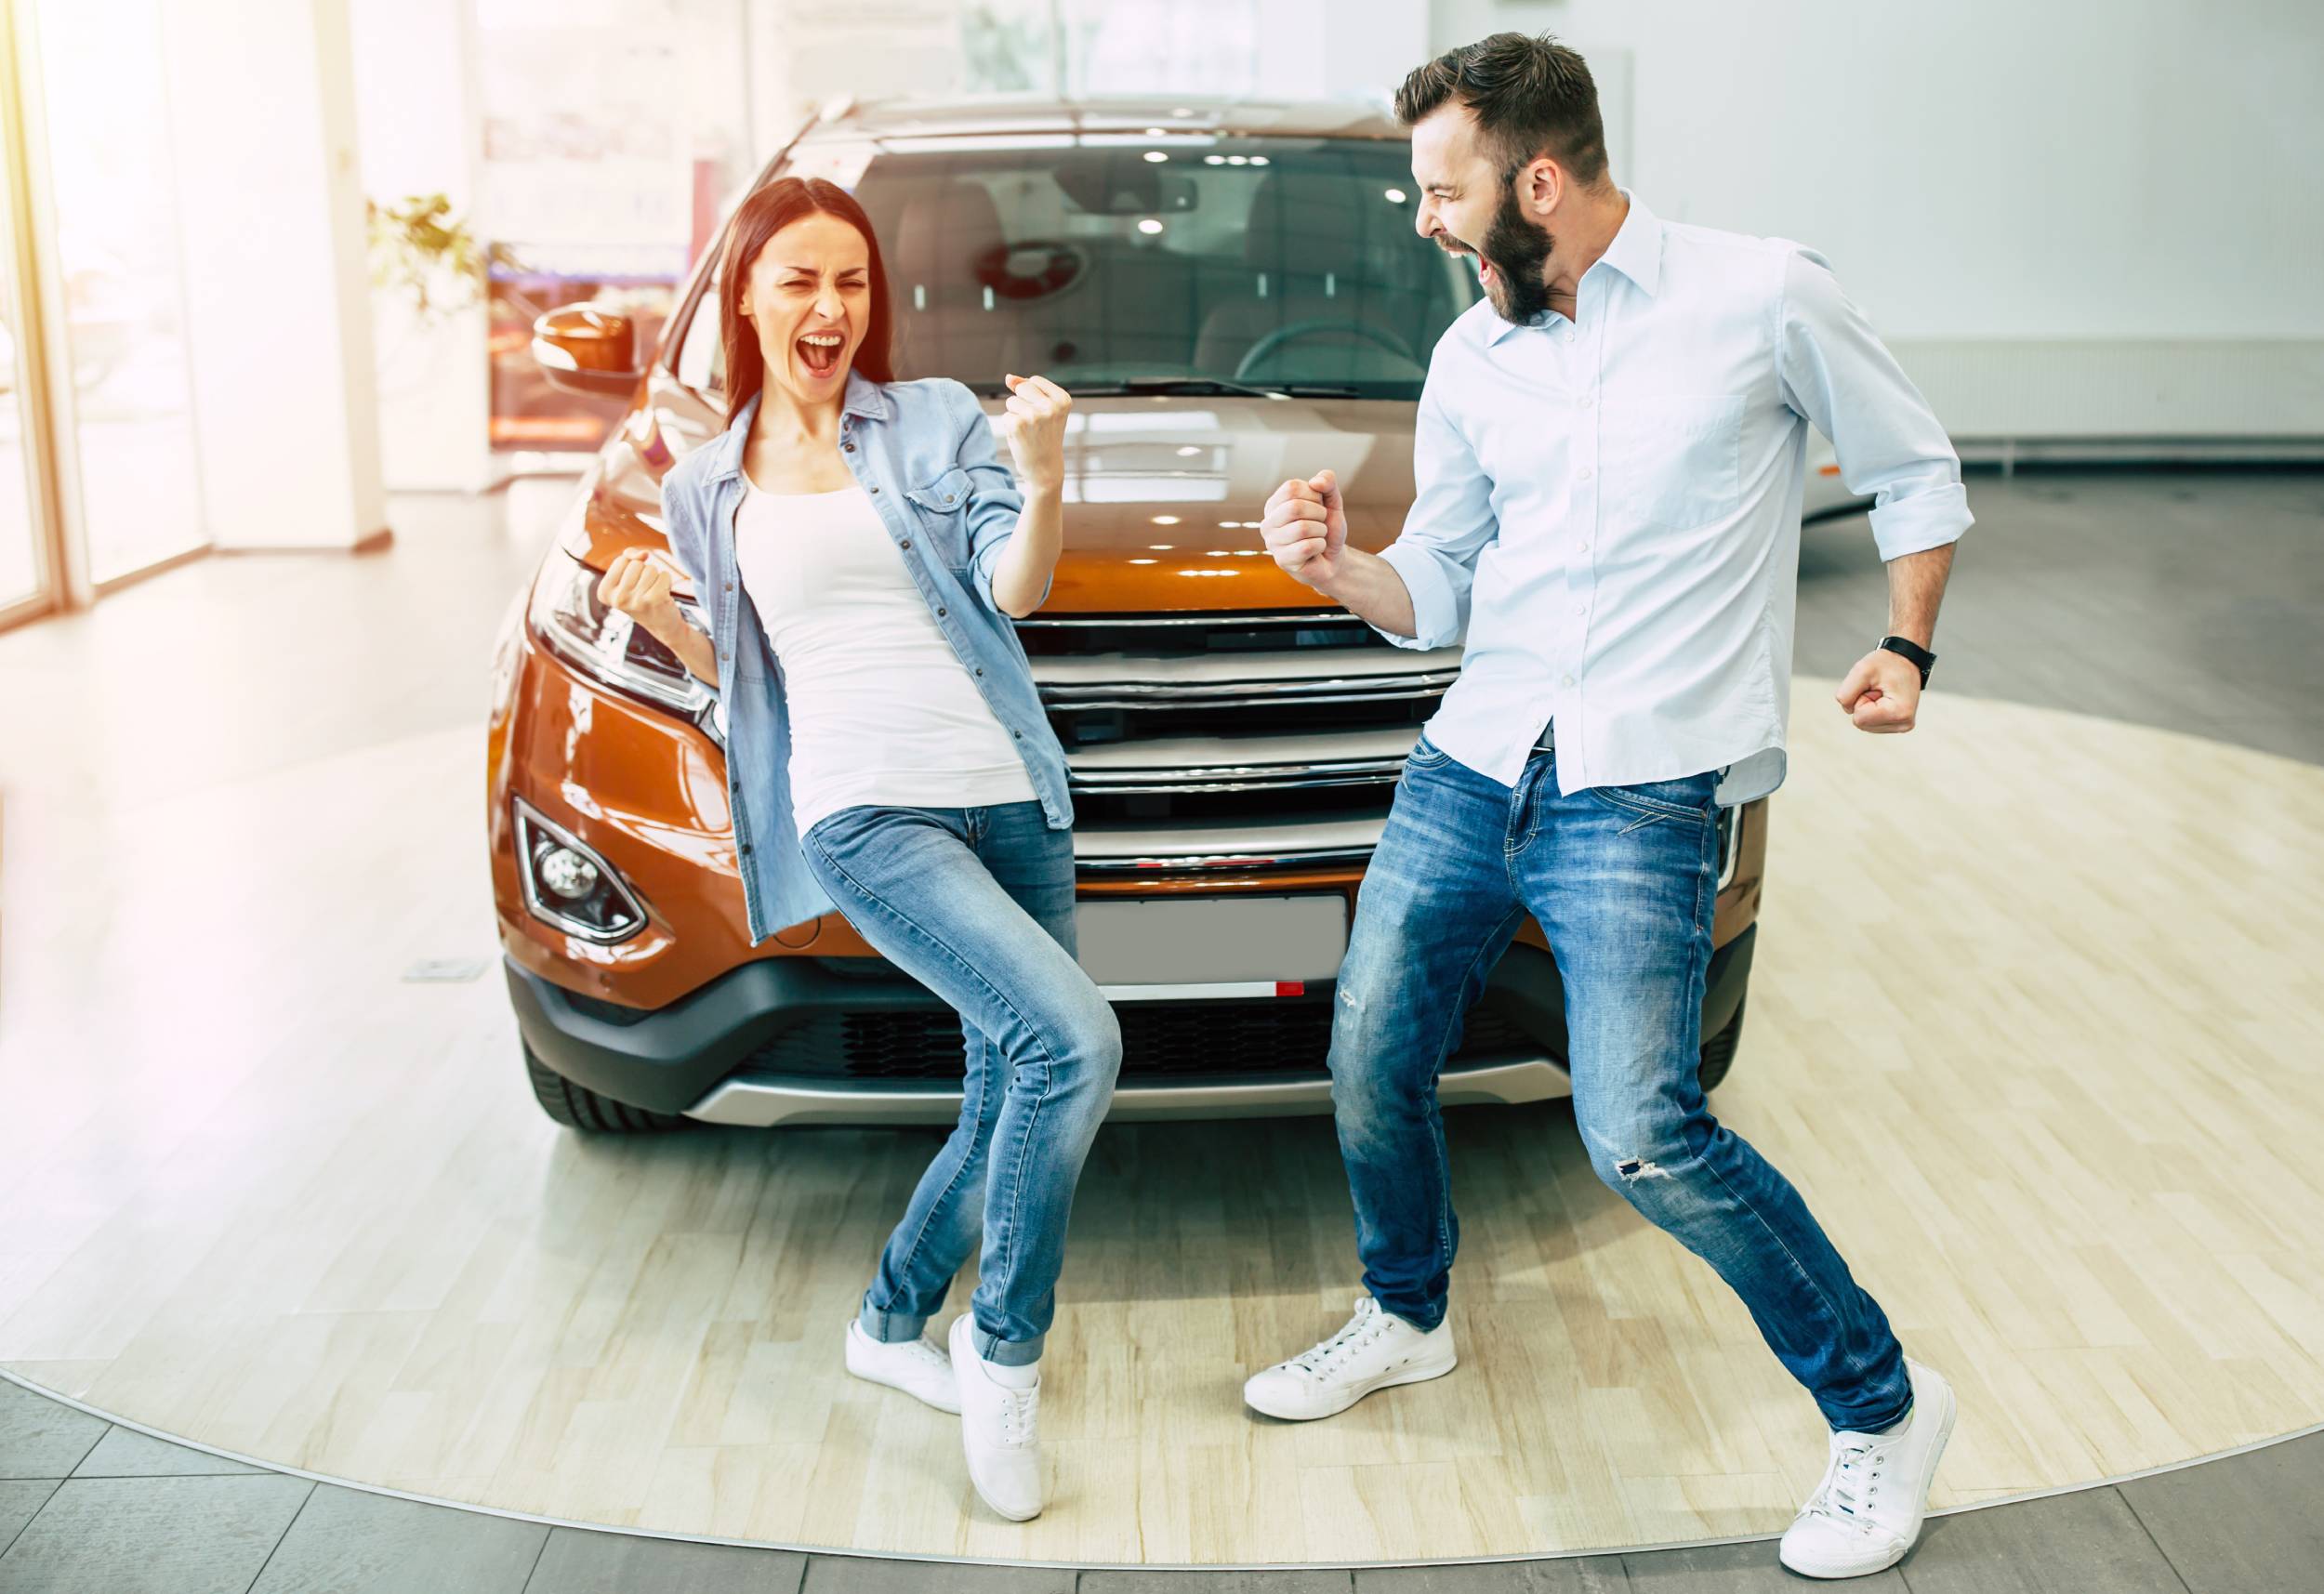 We buy a new car on tuesday. Семья около машины. Девушка выбирает автомобиль. Танцы возле машины. Фотосессия возле машины семья.